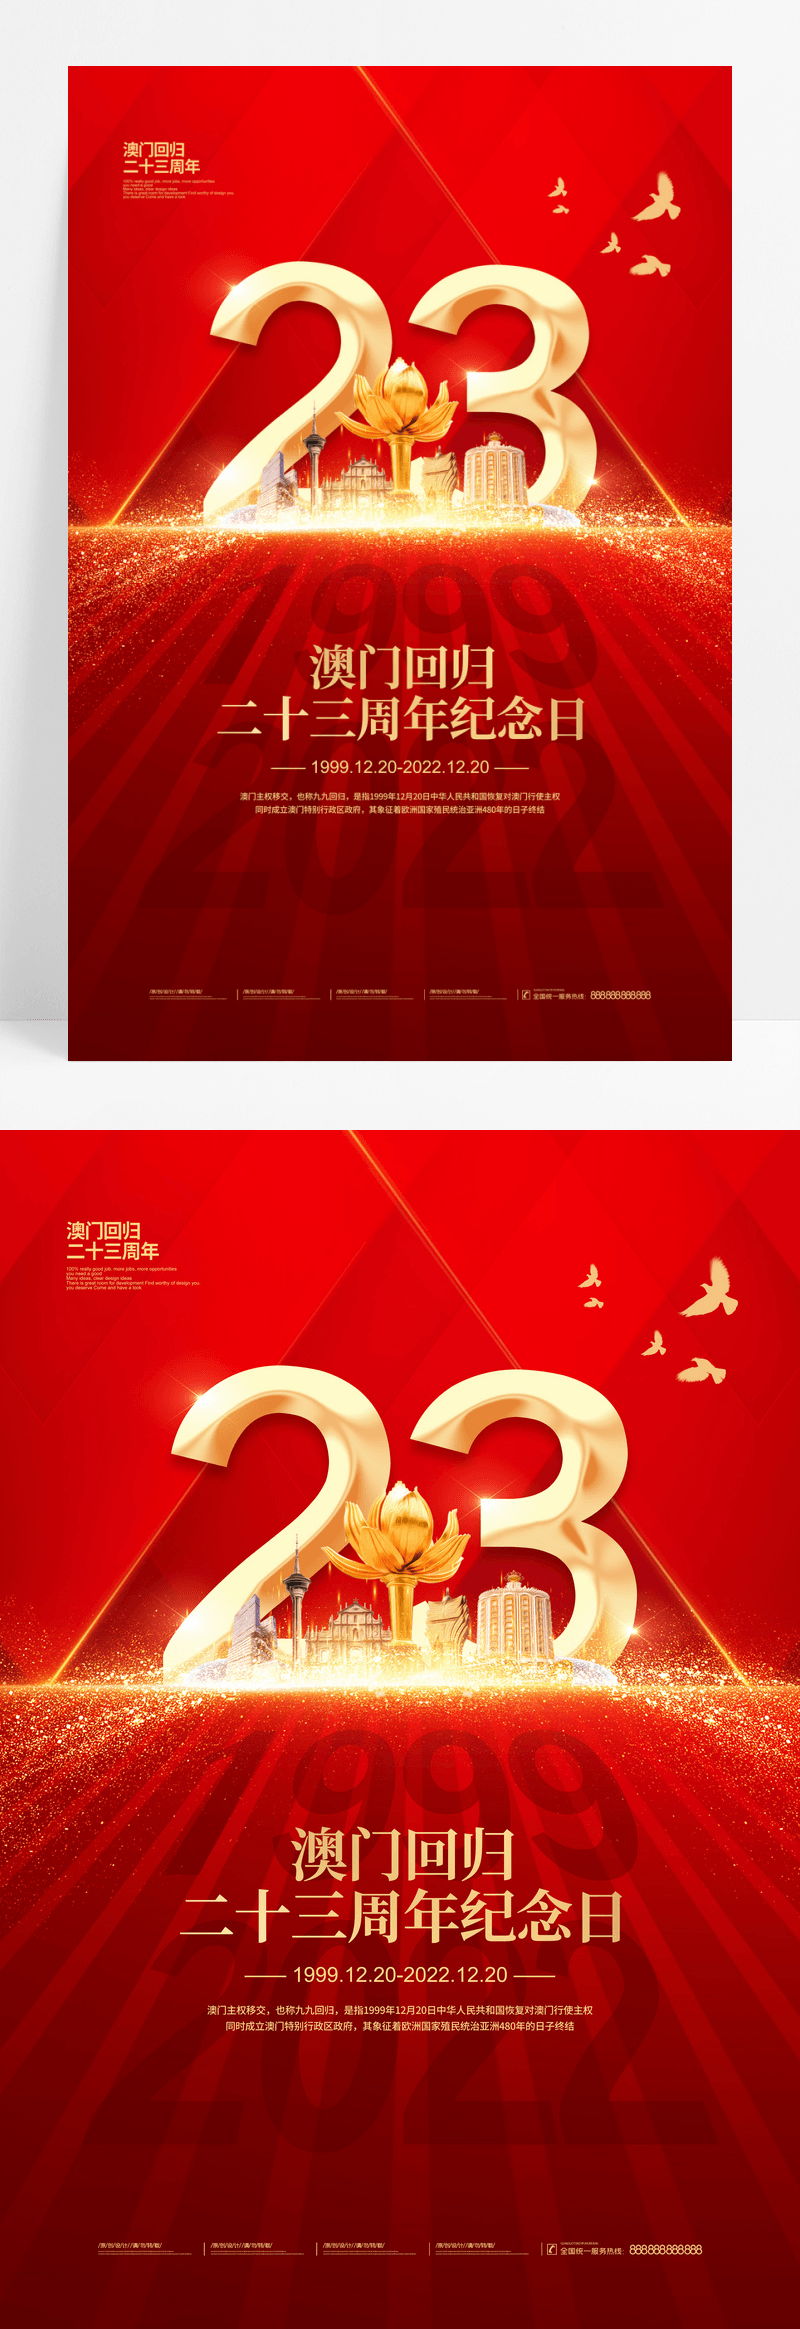 红色节约澳门回归23周年纪念日宣传海报设计澳门回归纪念日